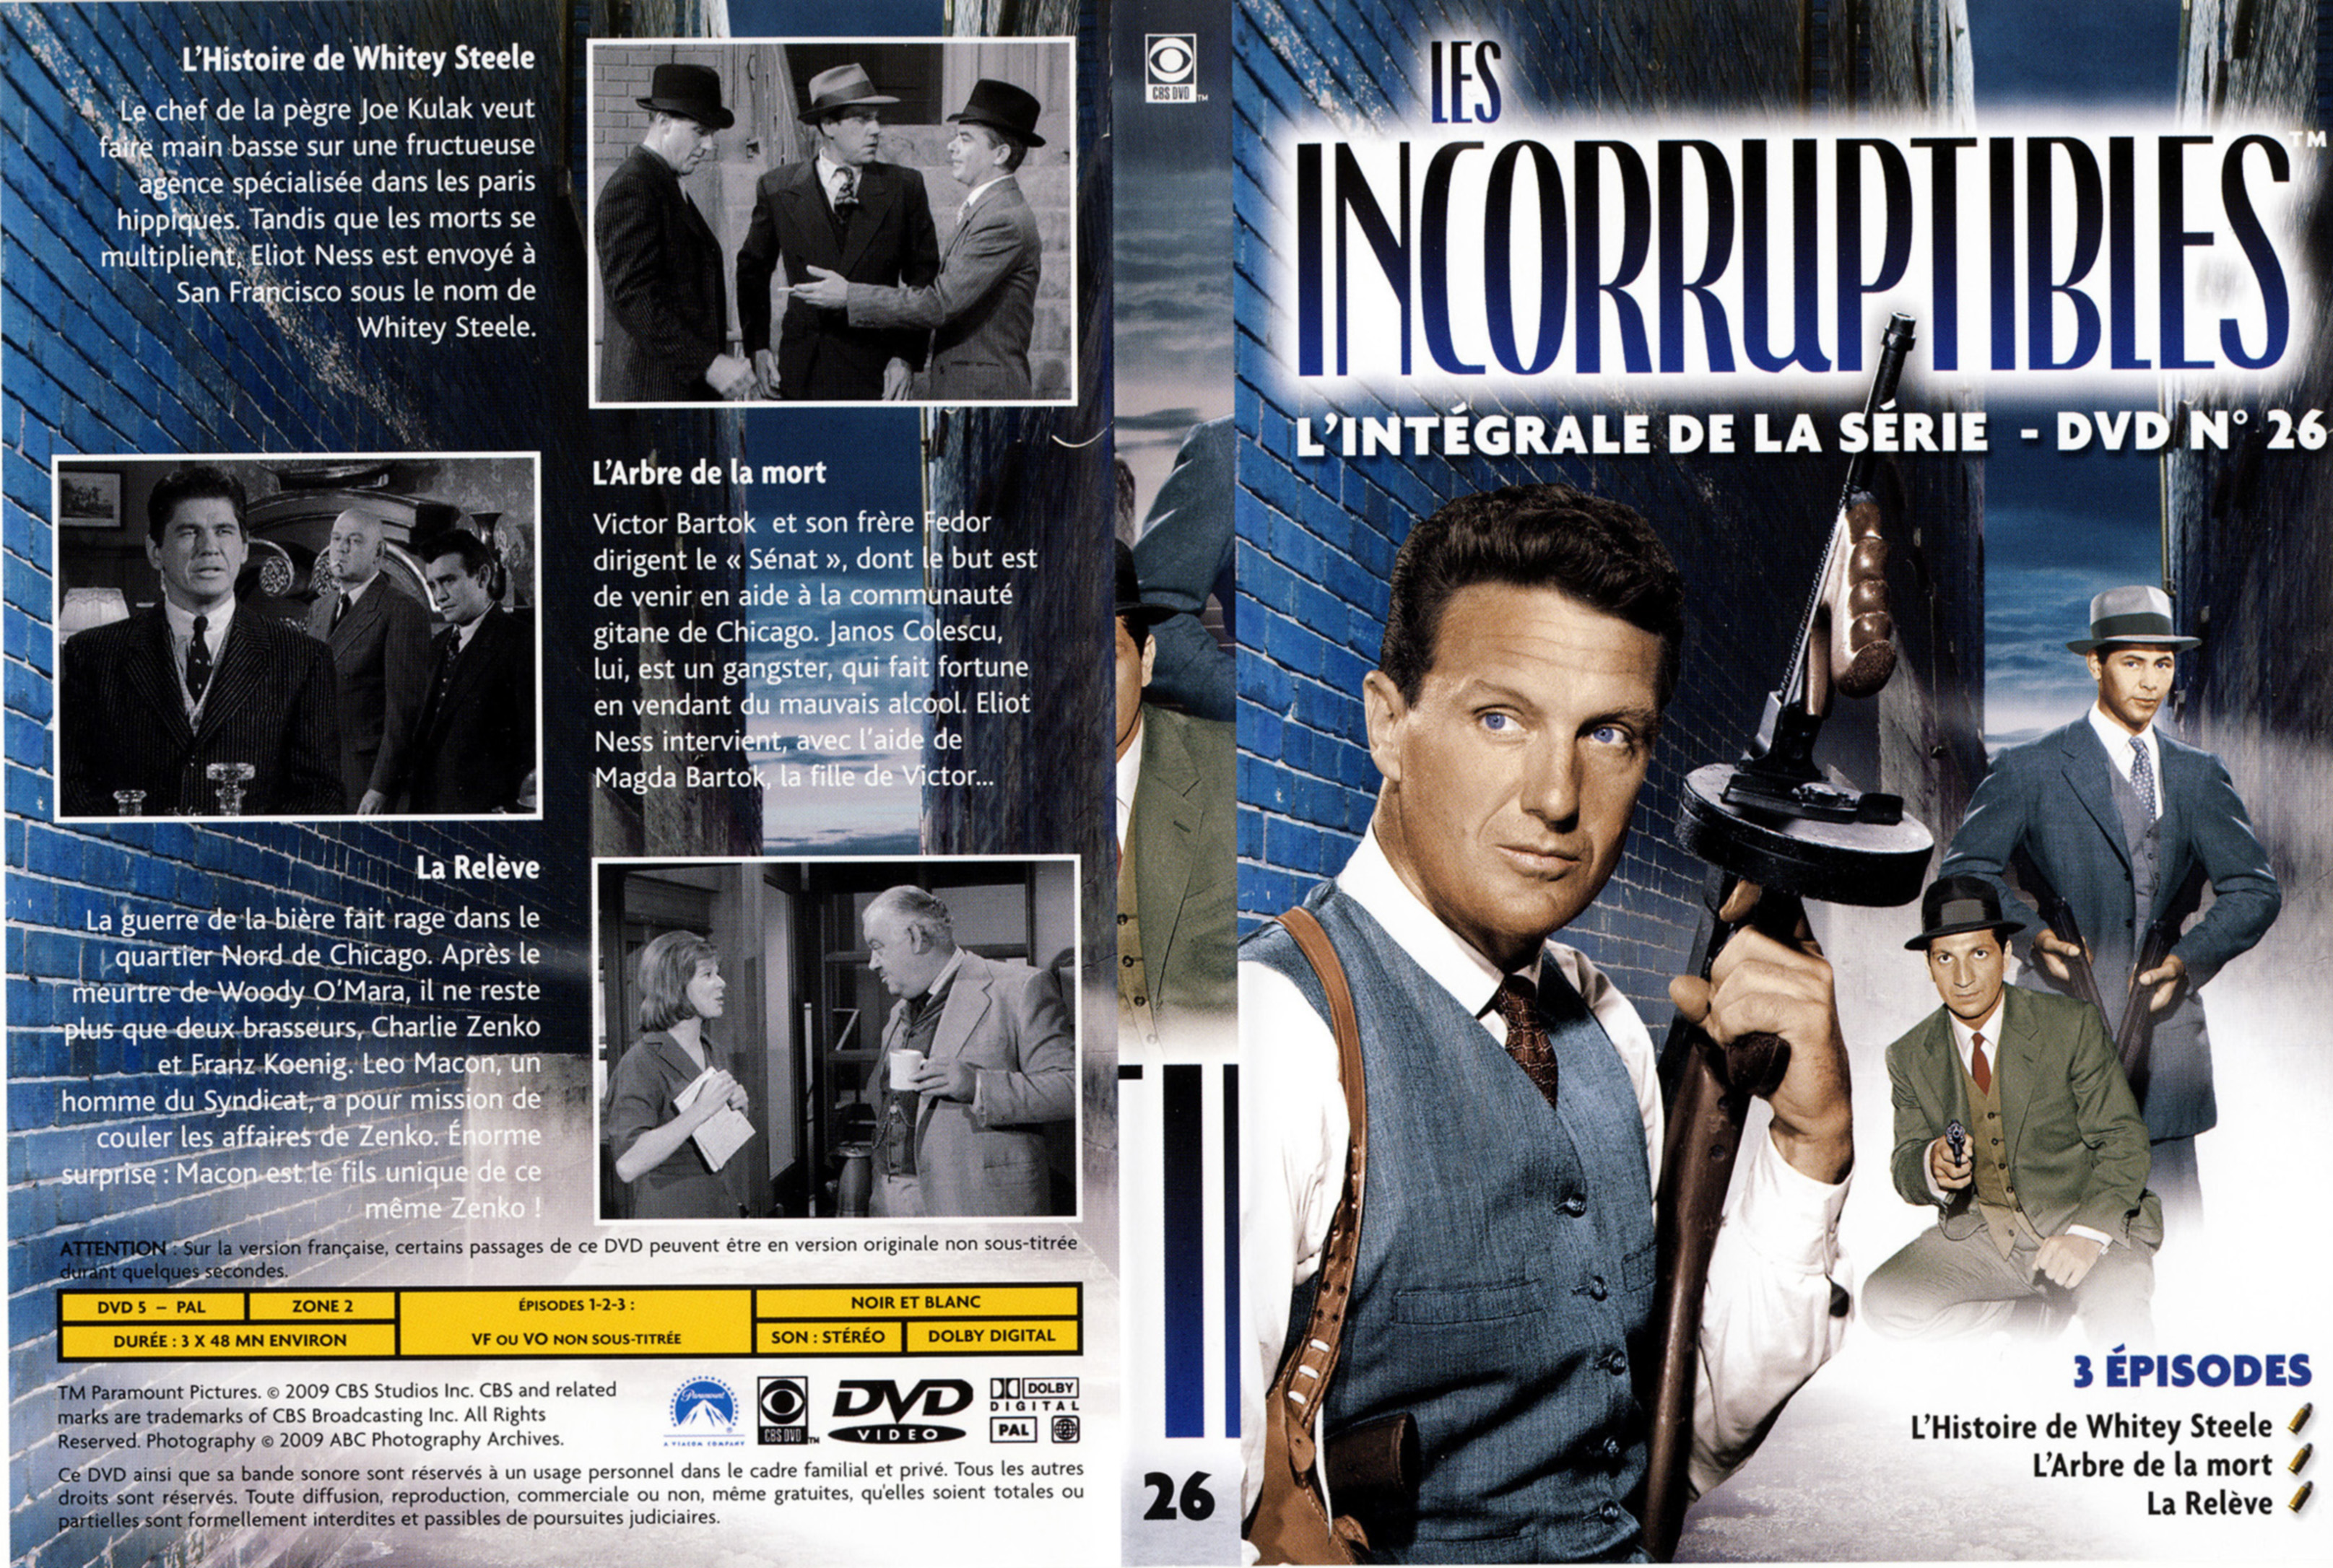 Jaquette DVD Les incorruptibles intgrale DVD 26